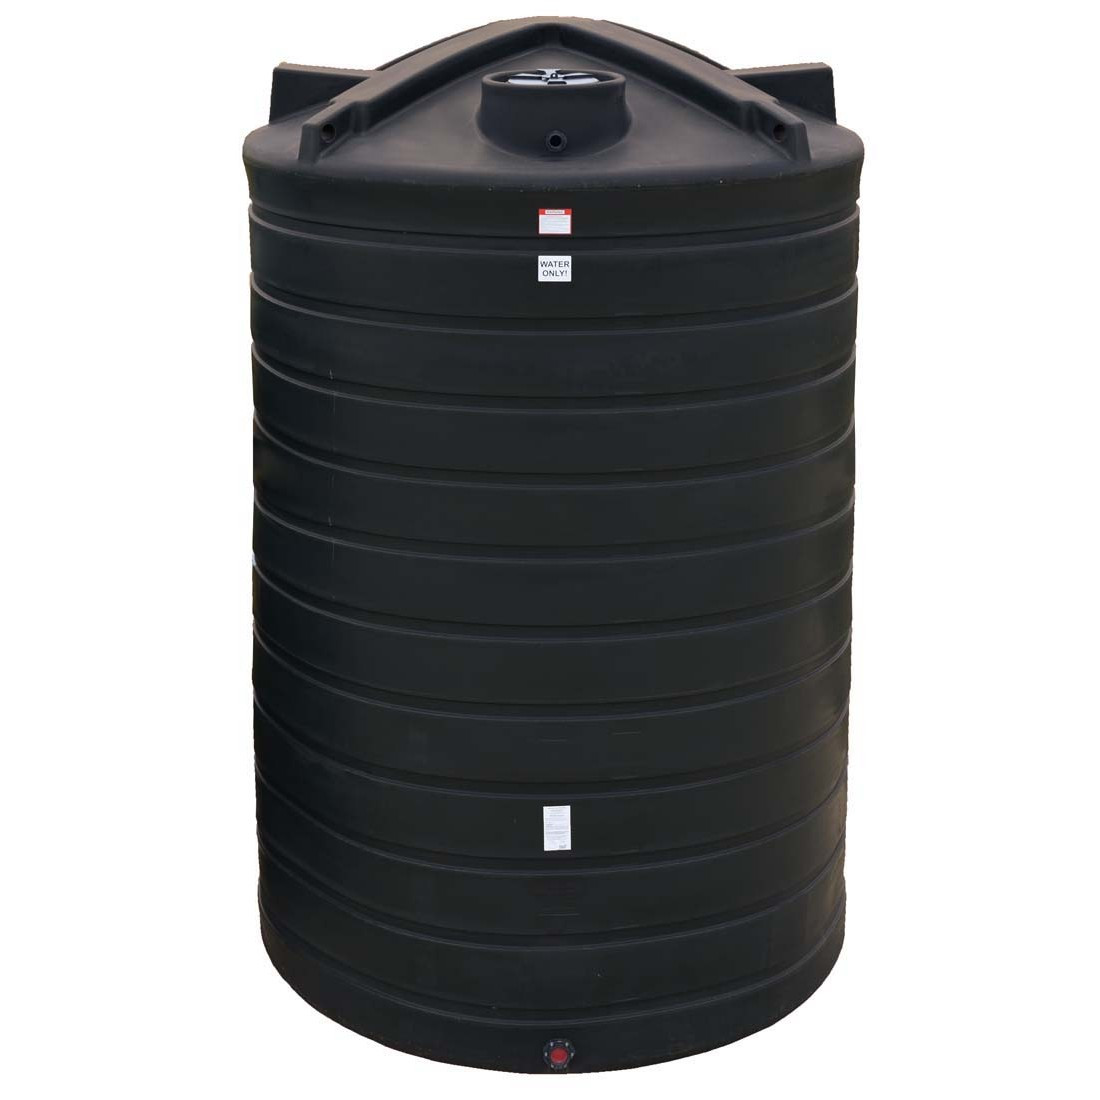 Best ideas about Vertical Water Storage Tank
. Save or Pin 5200 Gallon Vertical Water Storage Tank Now.